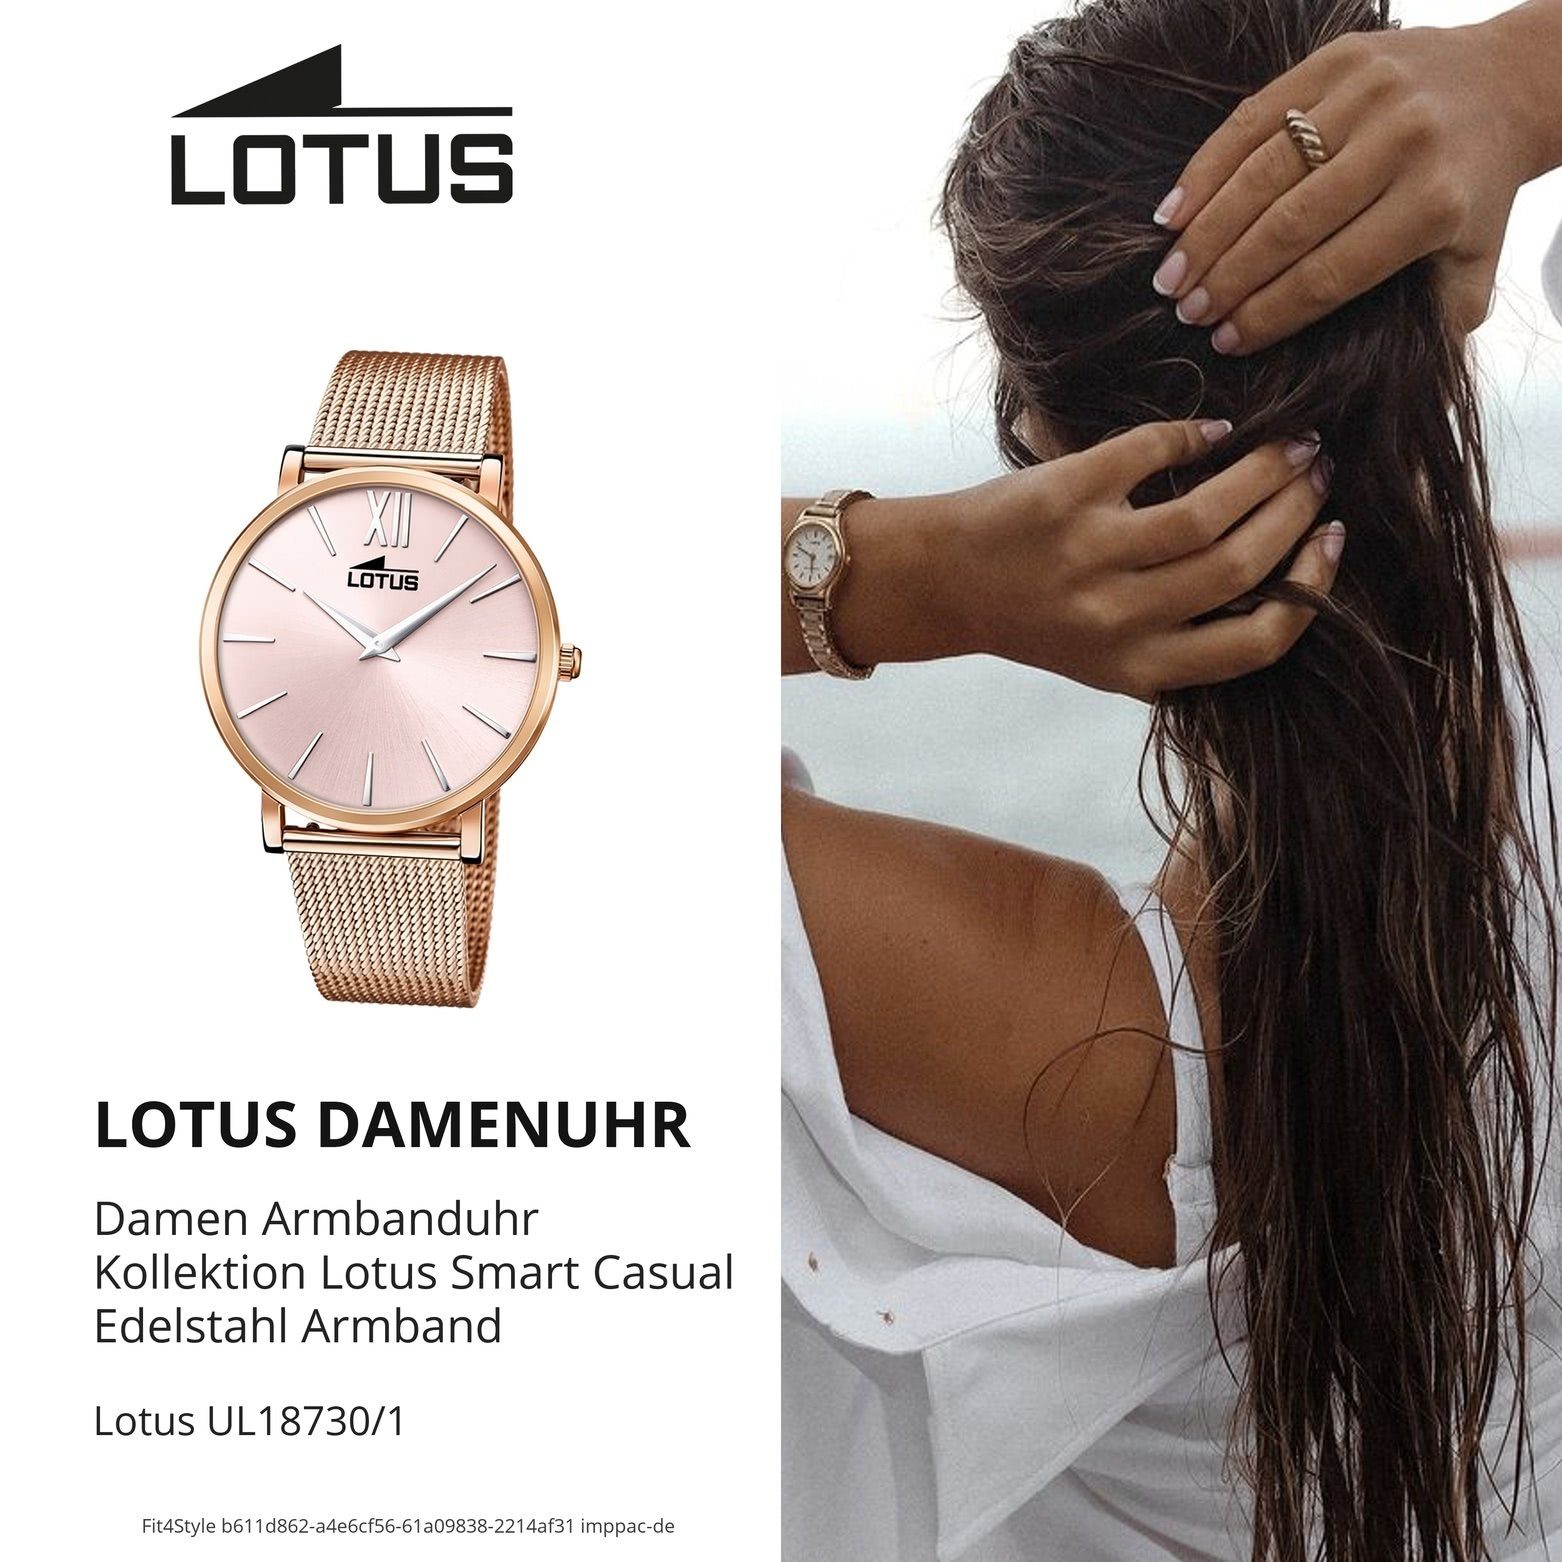 Lotus Edelstahlarmband Armbanduhr Quarzuhr (ca. Smart Damenuhr Lotus 38mm) Casual, rund, rosegold mittel Damen